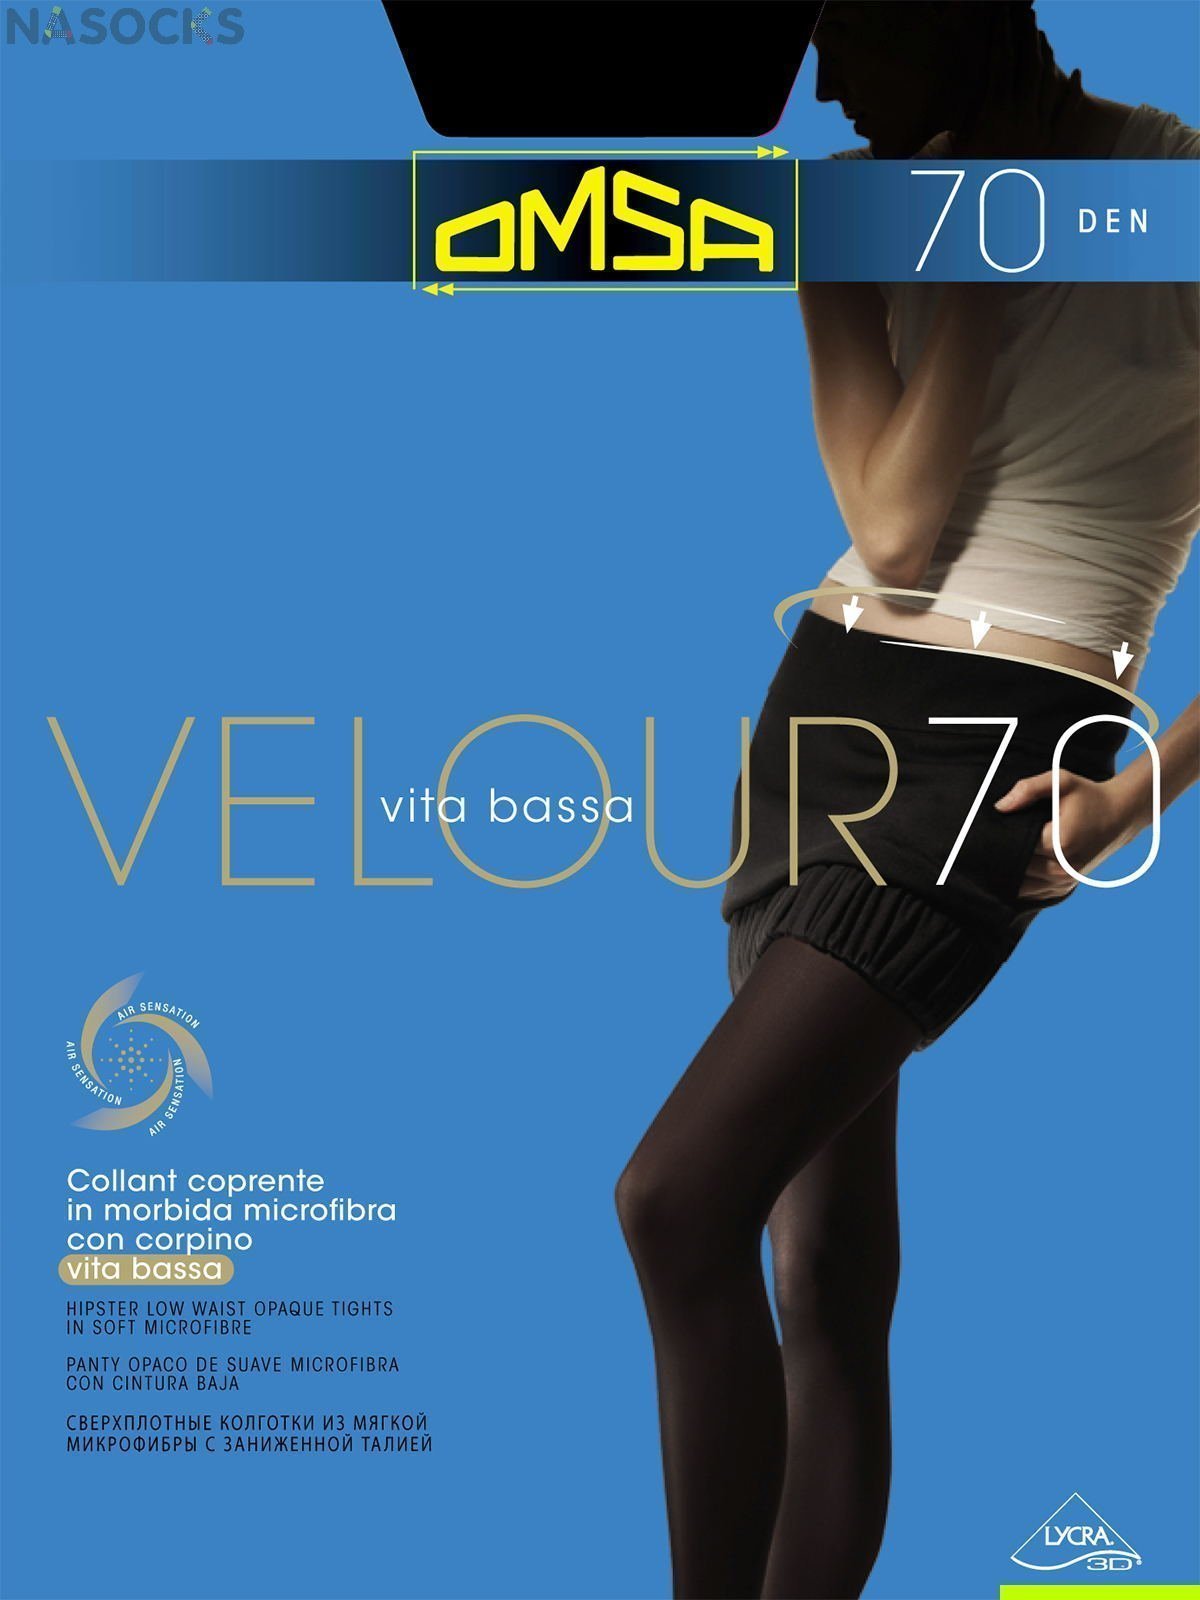 Колготки OMSA Velour 70 den Vita Bassa купить недорого в интернет-магазине.